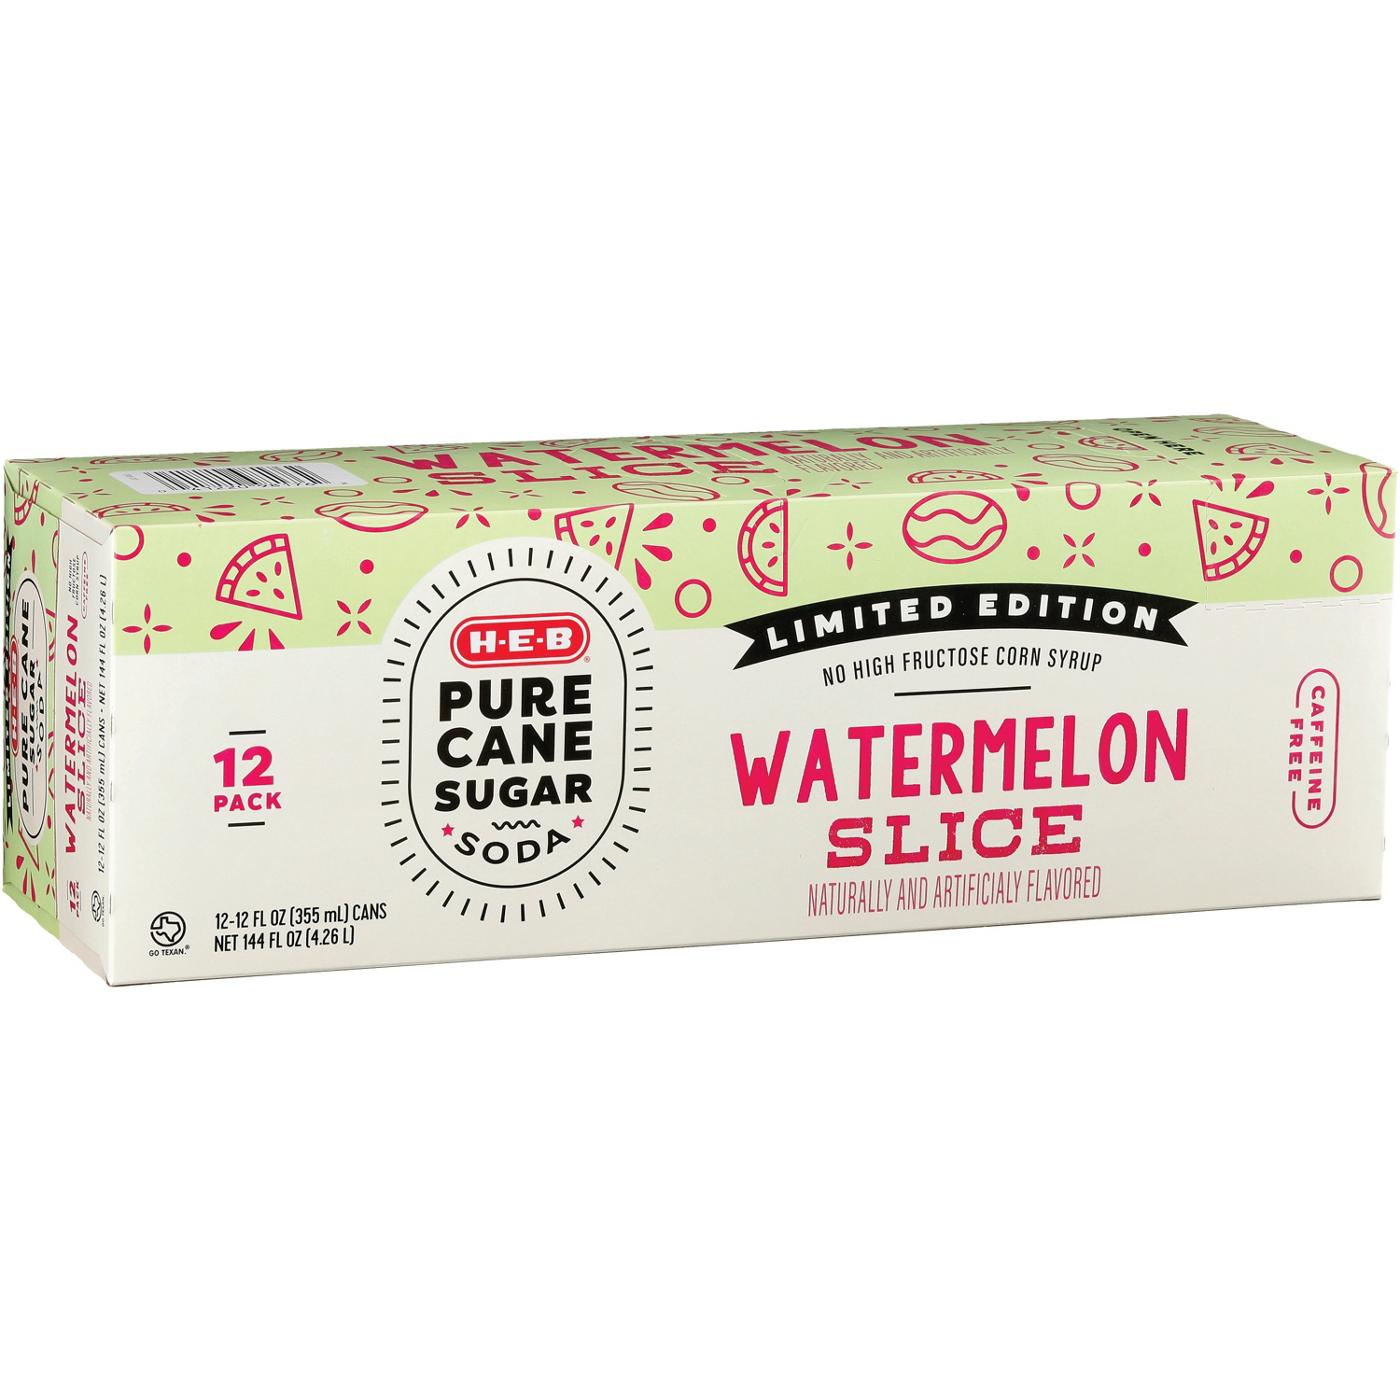 H-E-B Pure Cane Sugar Watermelon Slice Soda 12 pk Cans; image 2 of 2